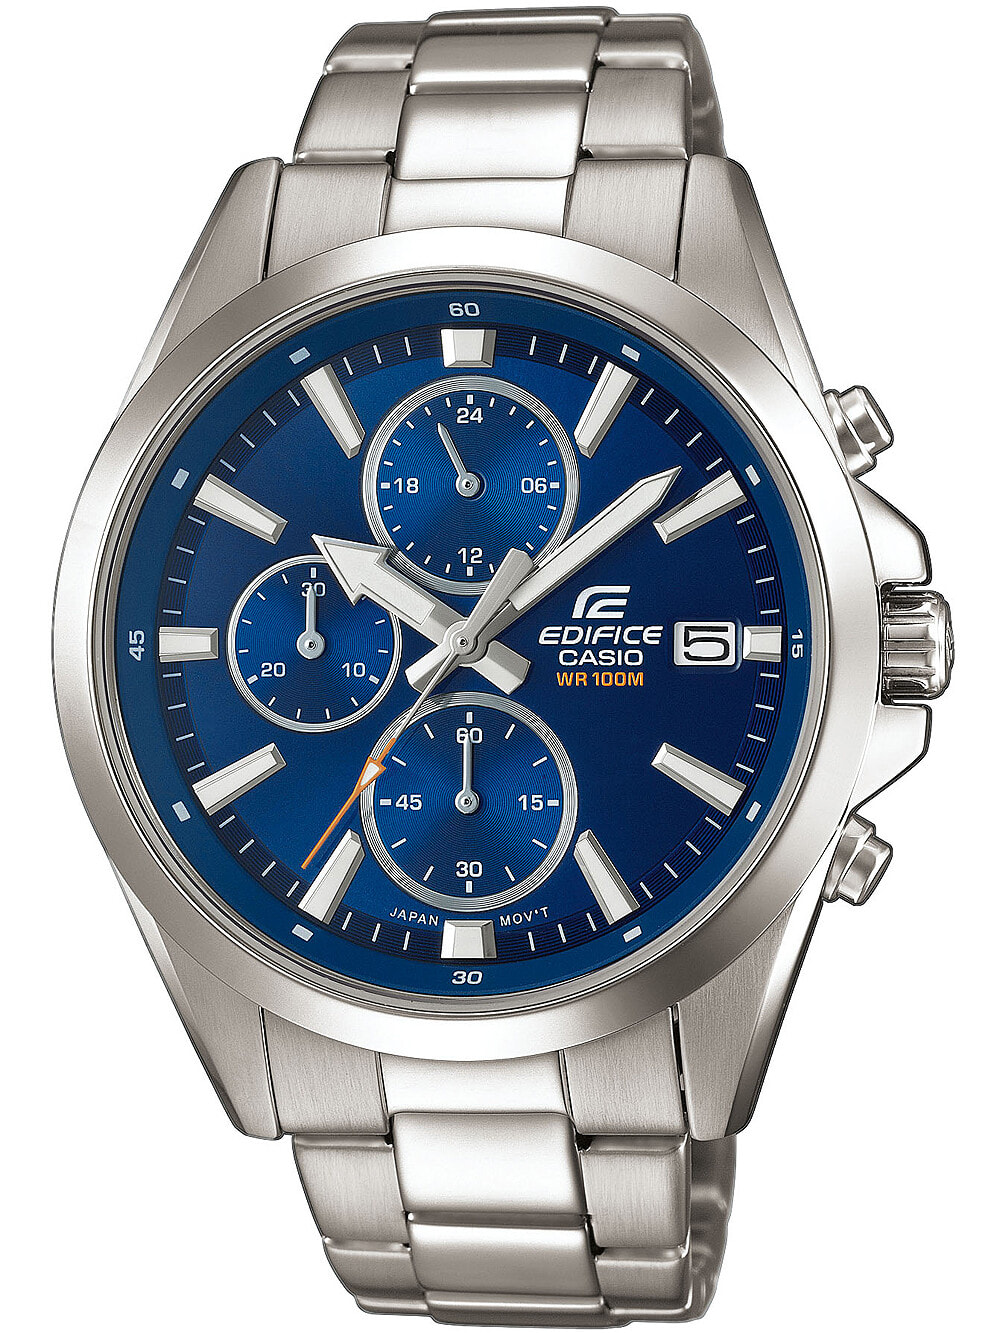 Мужские наручные часы с серебряным браслетом Casio EFV-560D-2AVUEF Edifice Chronograph 45mm 10ATM